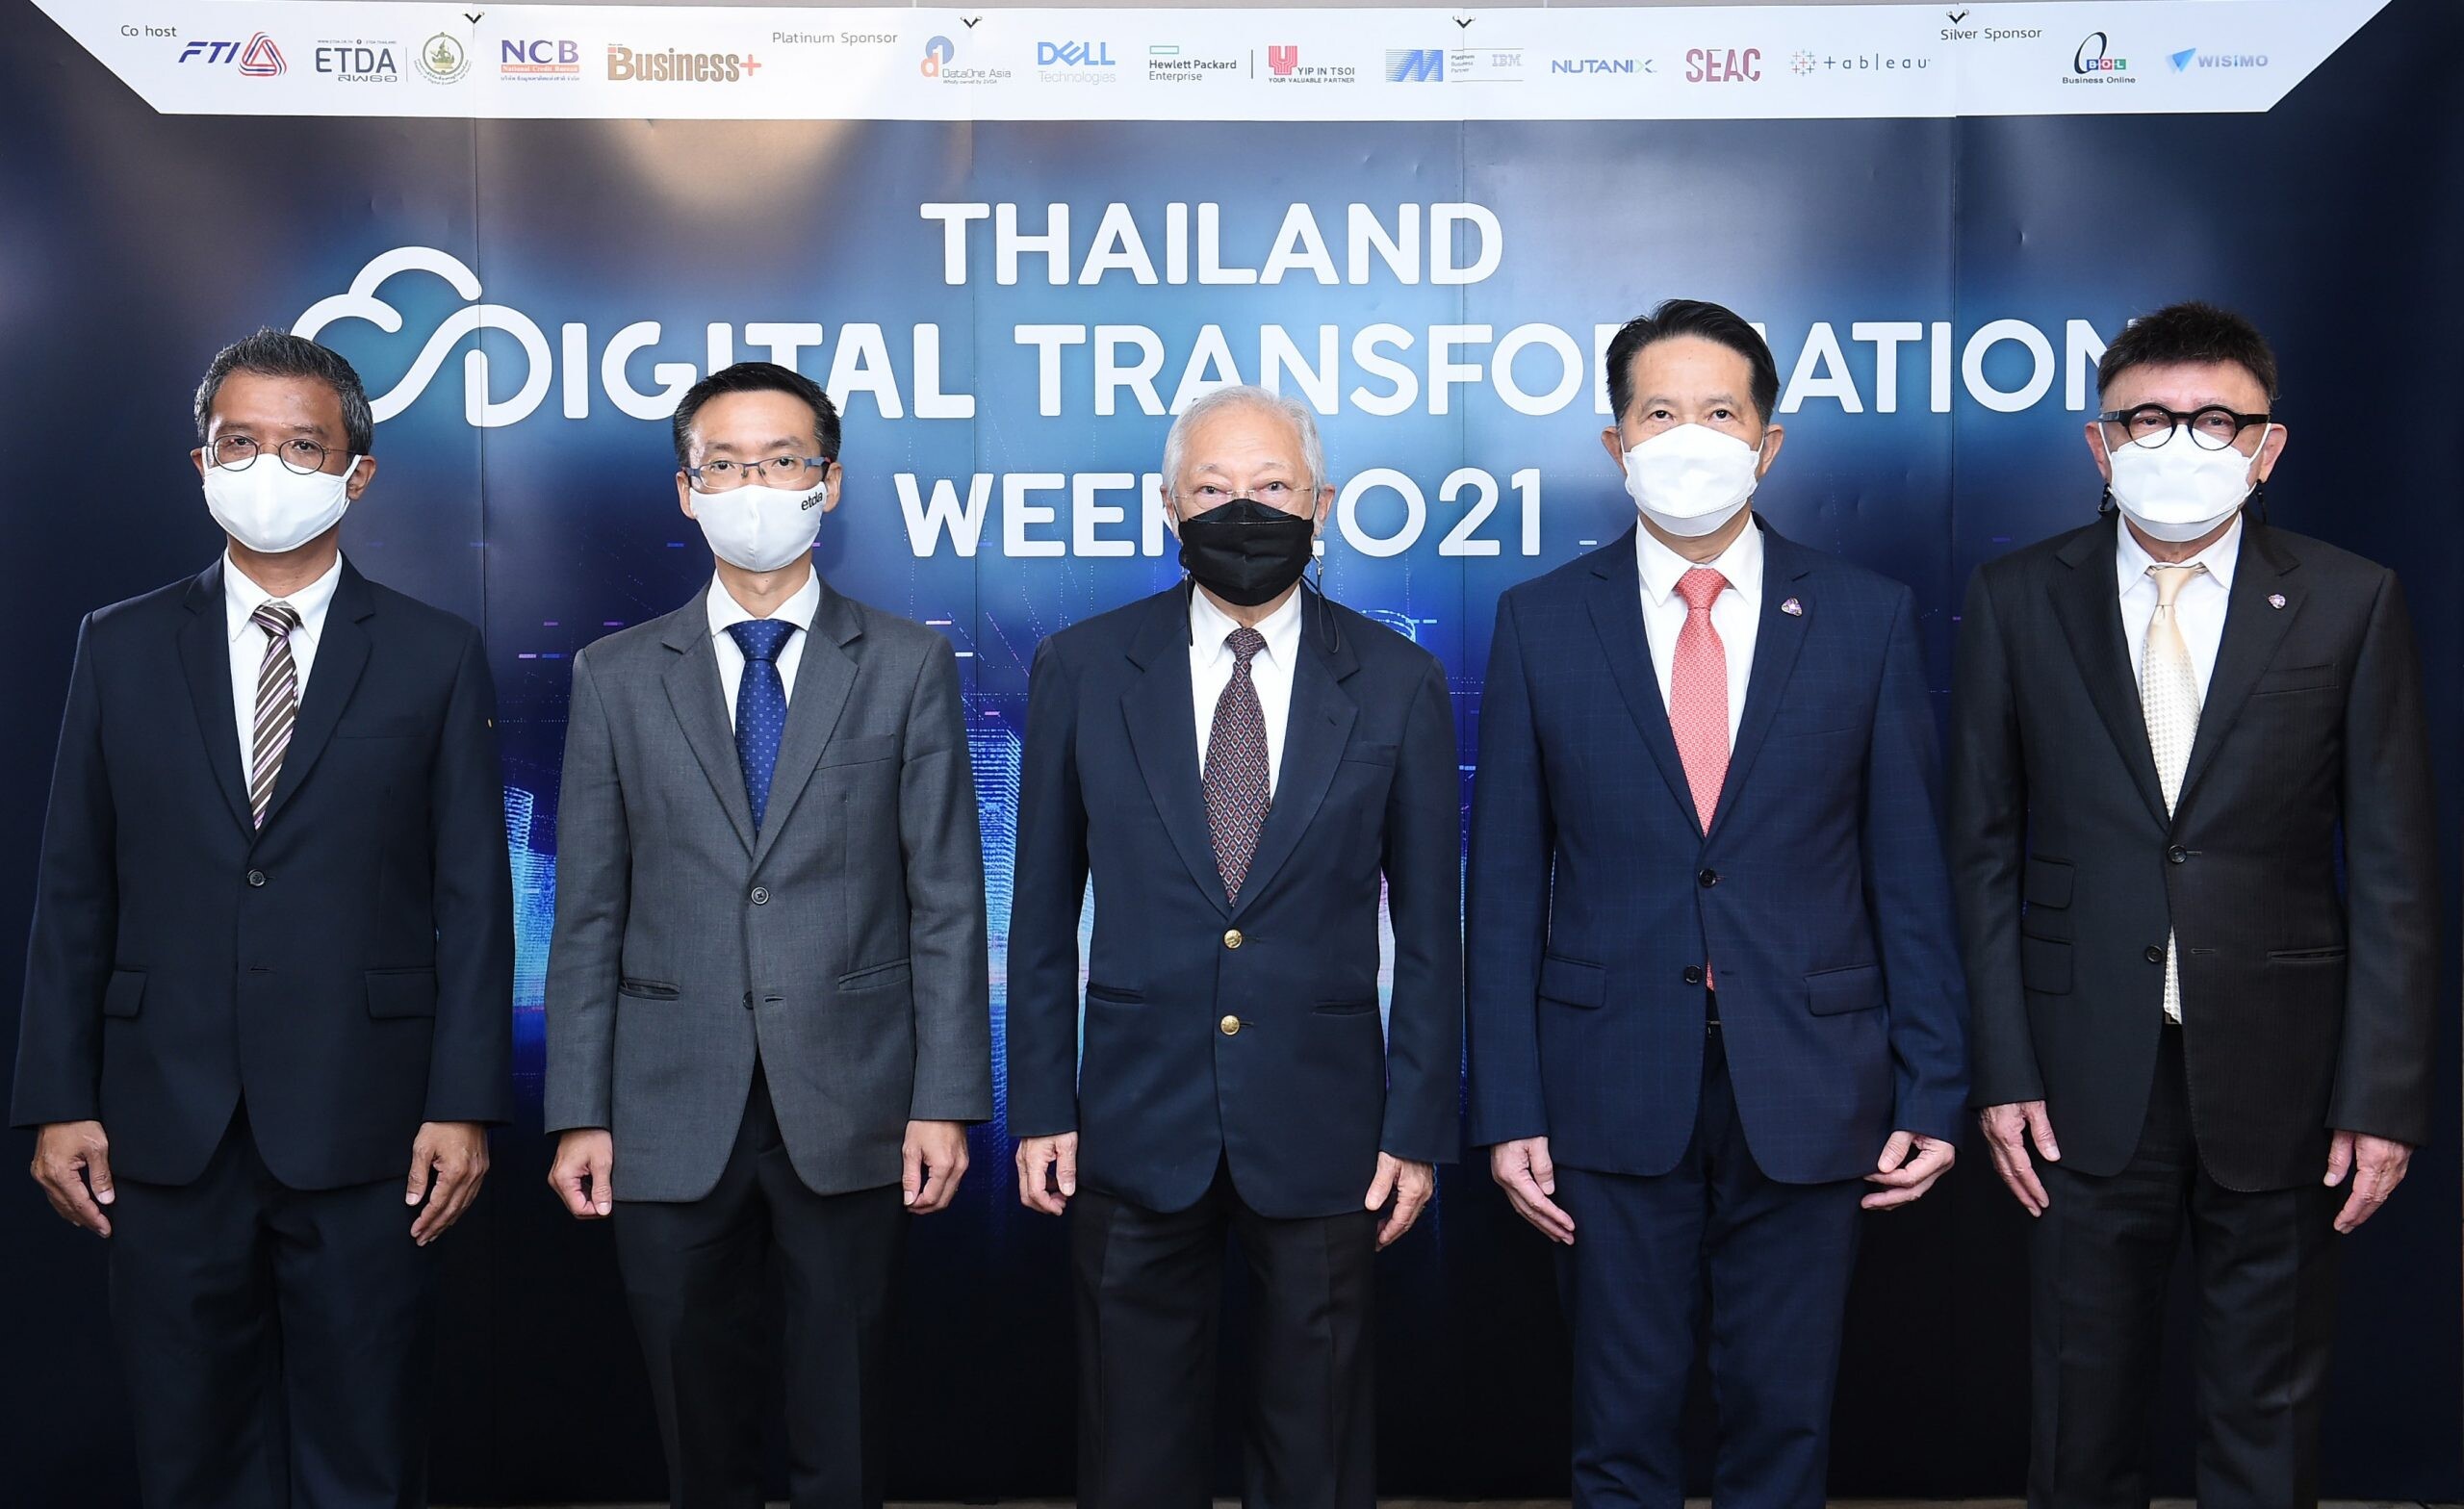 สภาอุตสาหกรรมแห่งประเทศไทย จับมือ ETDA และ นิตยสาร B+ จัดงาน "THAILAND DIGITAL TRANSFORMATION WEEK 2021" ดันธุรกิจไทย พร้อมทรานสฟอร์มสู่องค์กรดิจิทัล